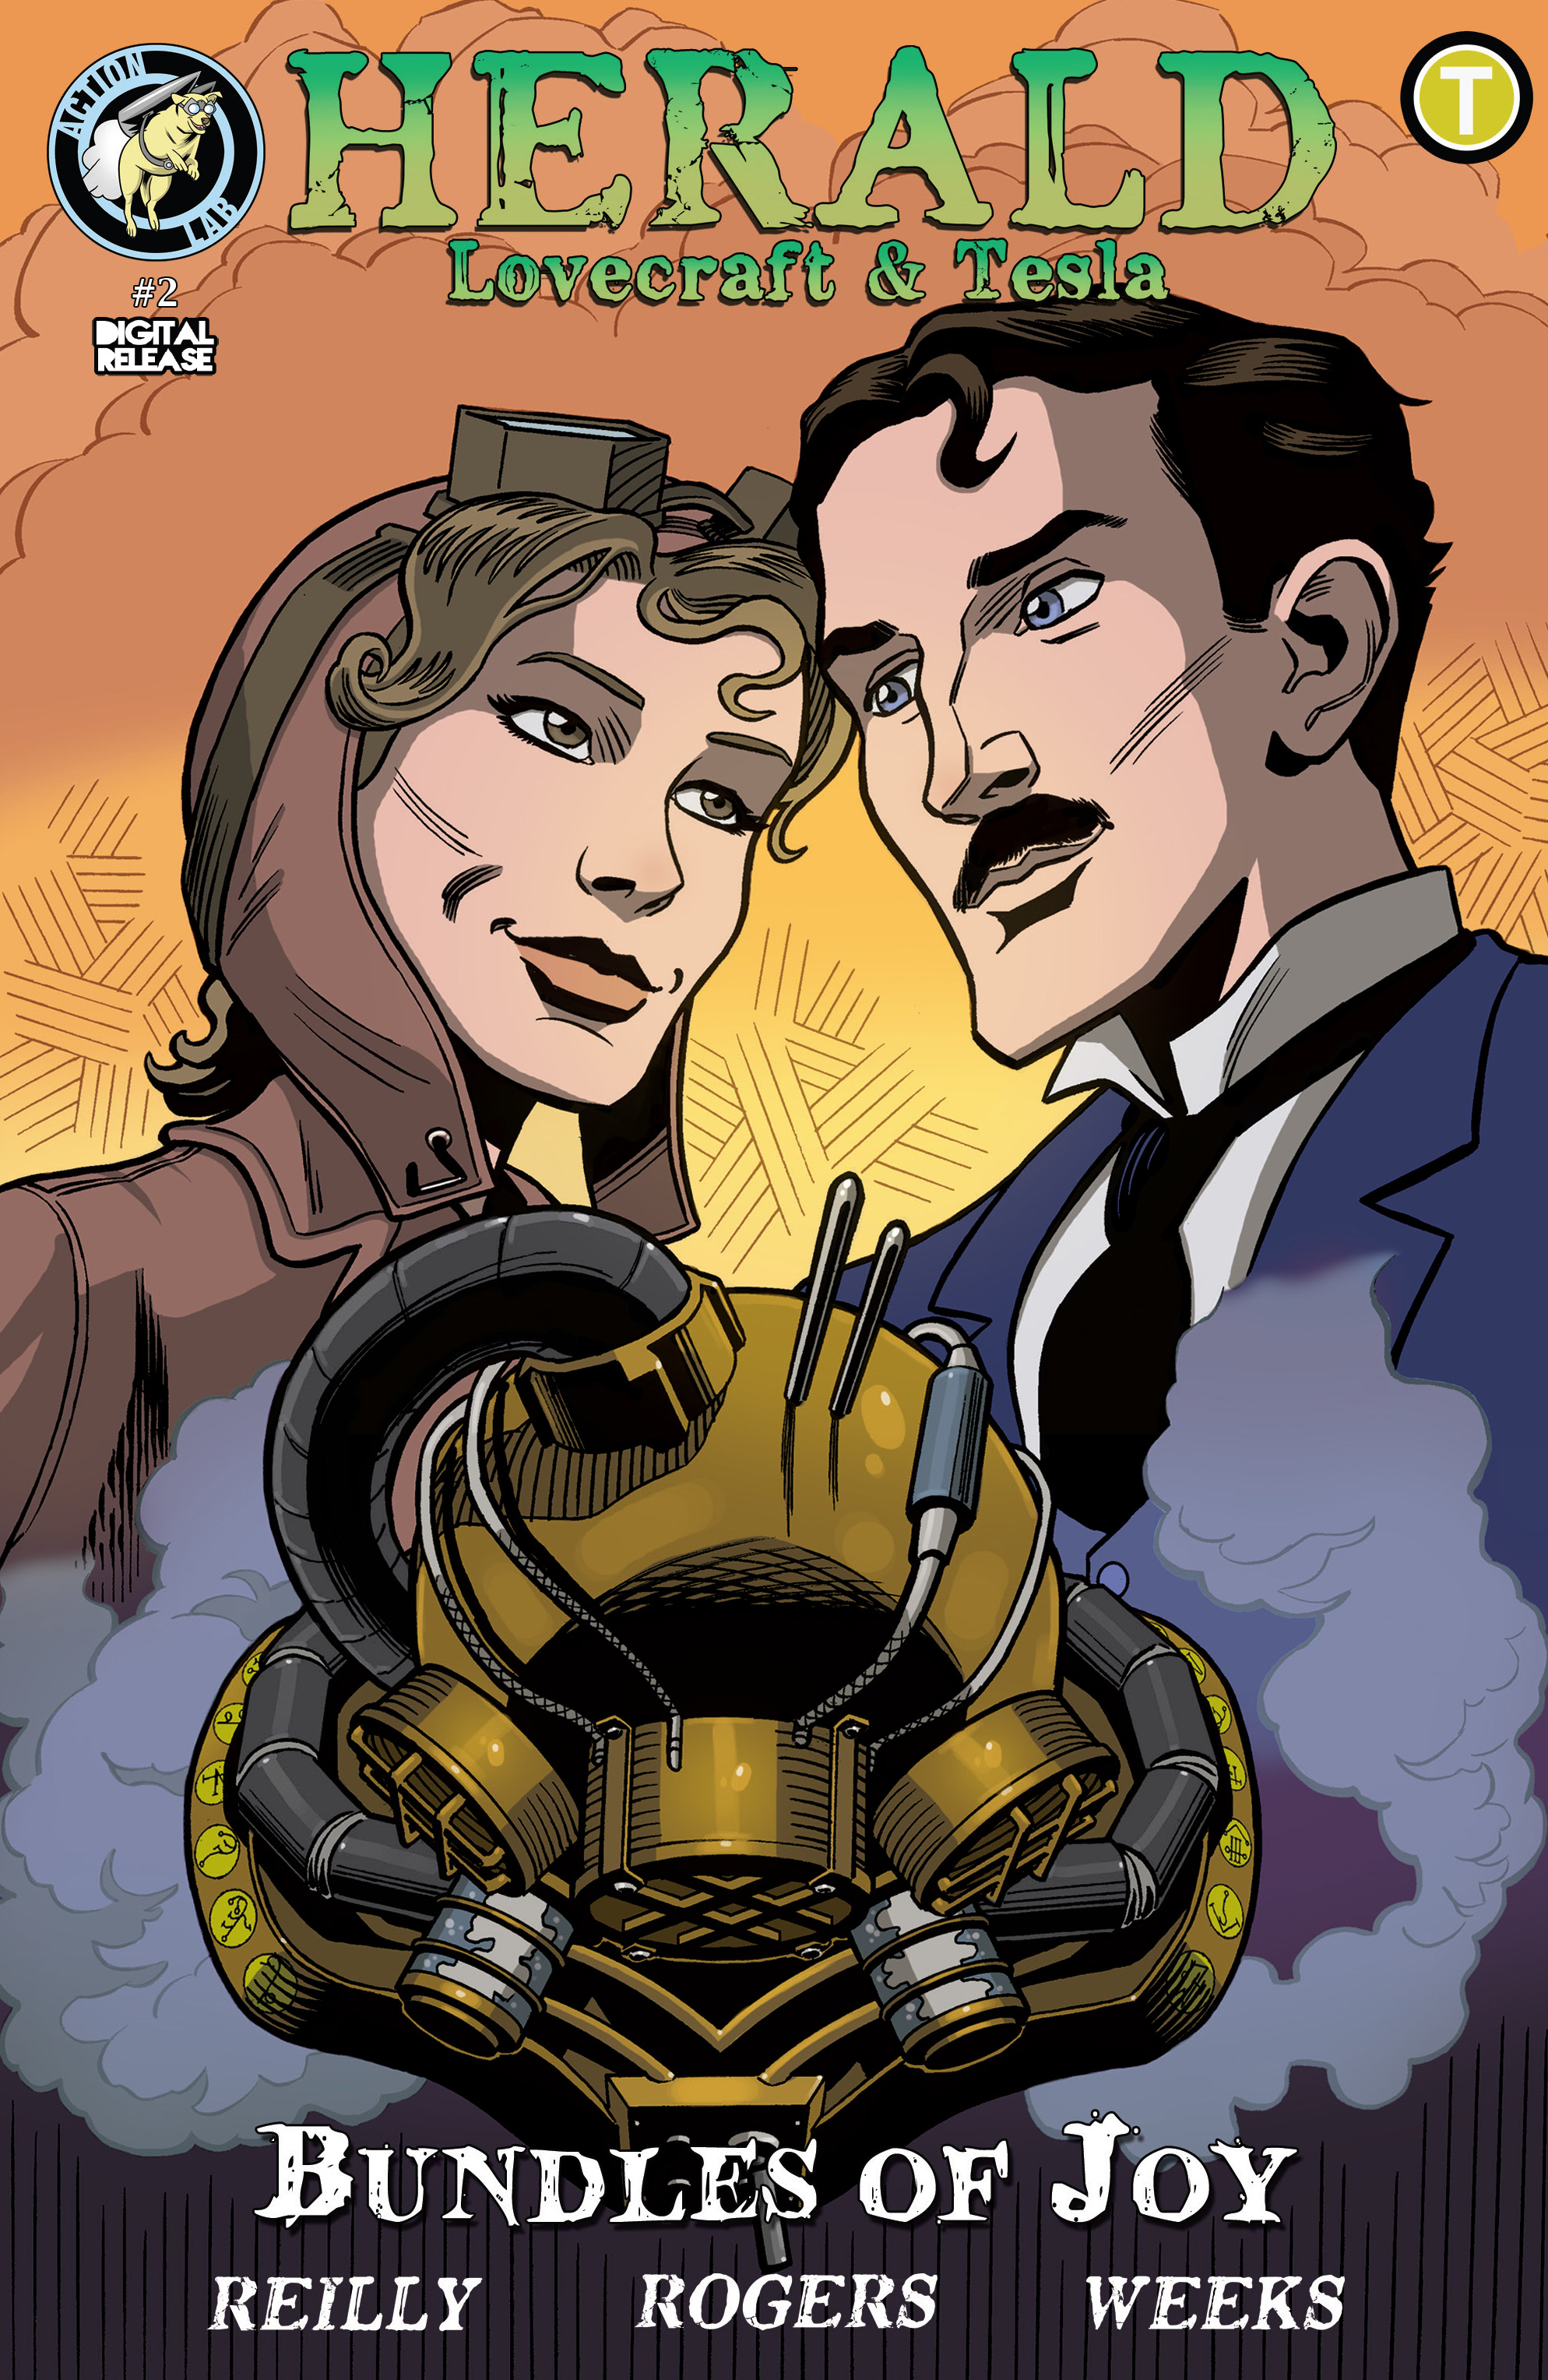 Read online Herald: Lovecraft & Tesla - Bundles of Joy comic -  Issue #2 - 1